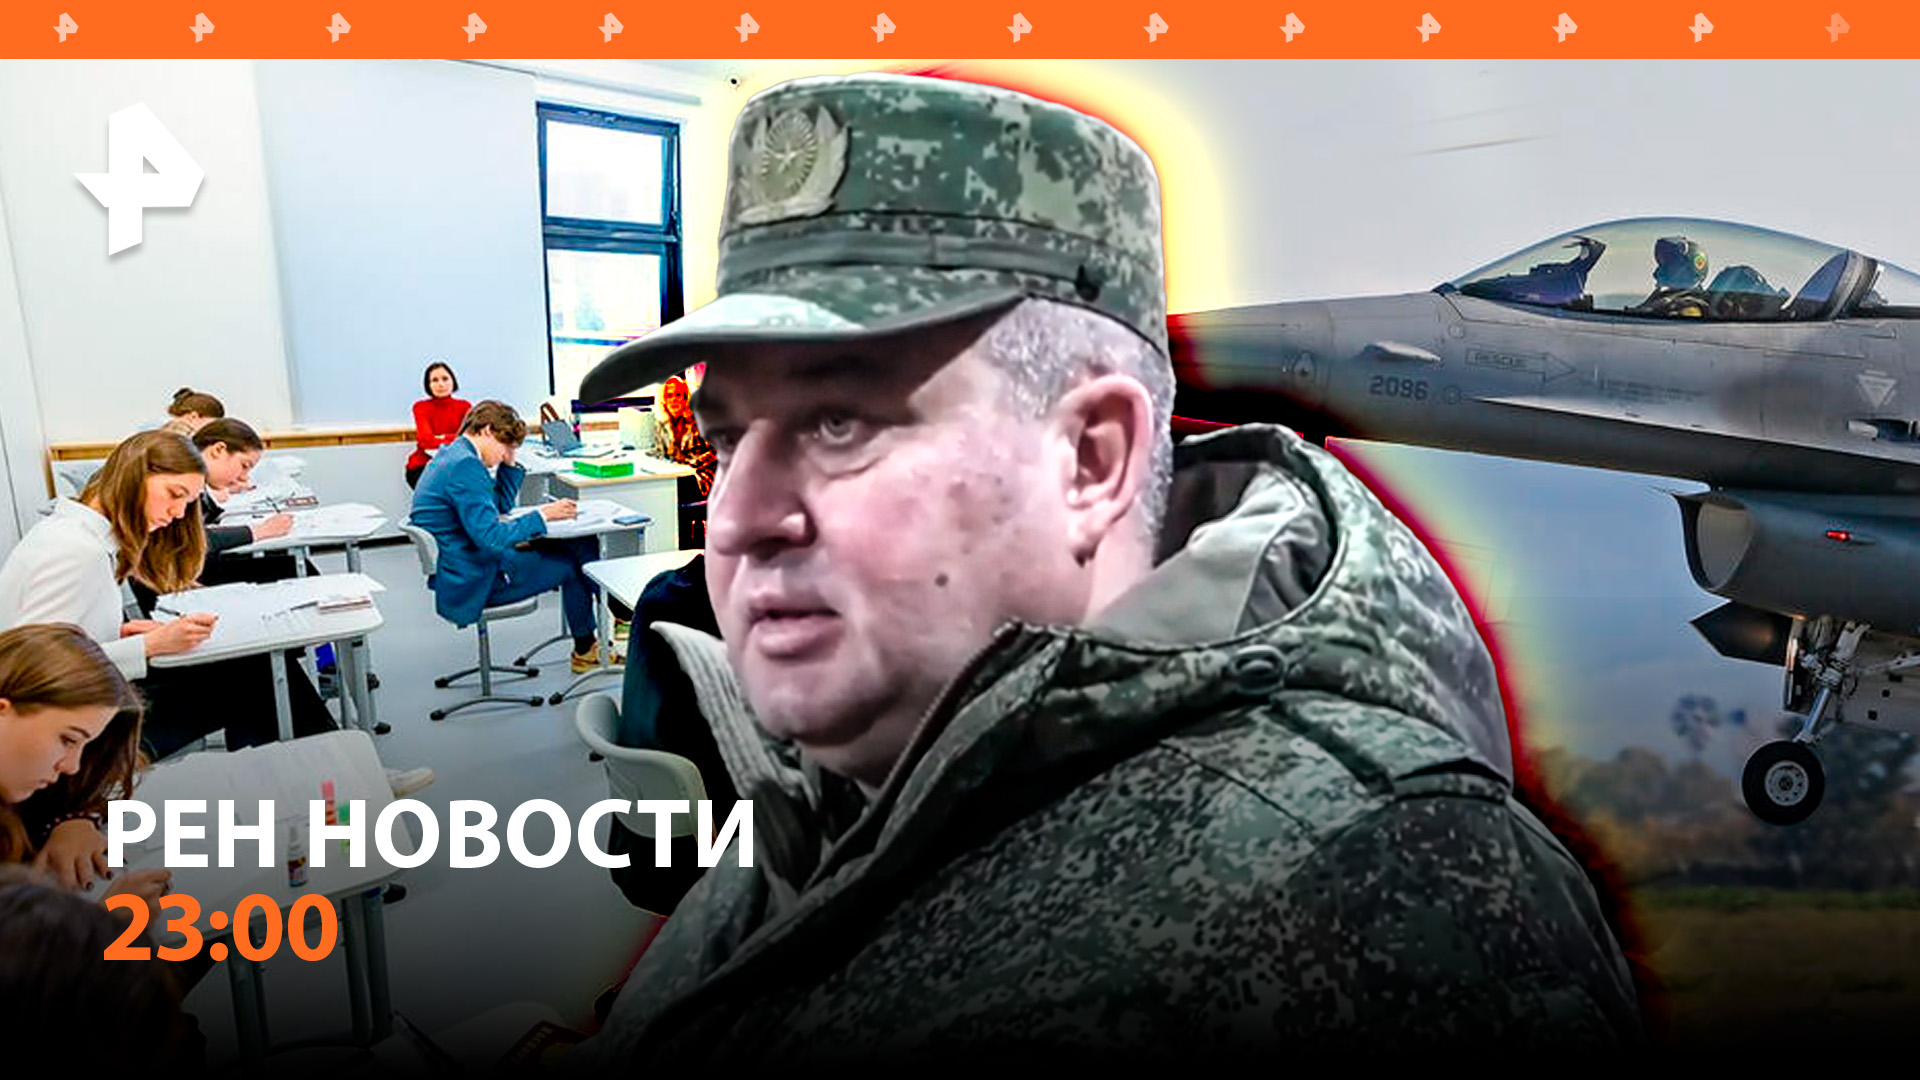 Аресты в Минобороны / ВС РФ готовятся сбивать F-16 / Обновления в ЕГЭ / РЕН НОВОСТИ 23.05, 23:00